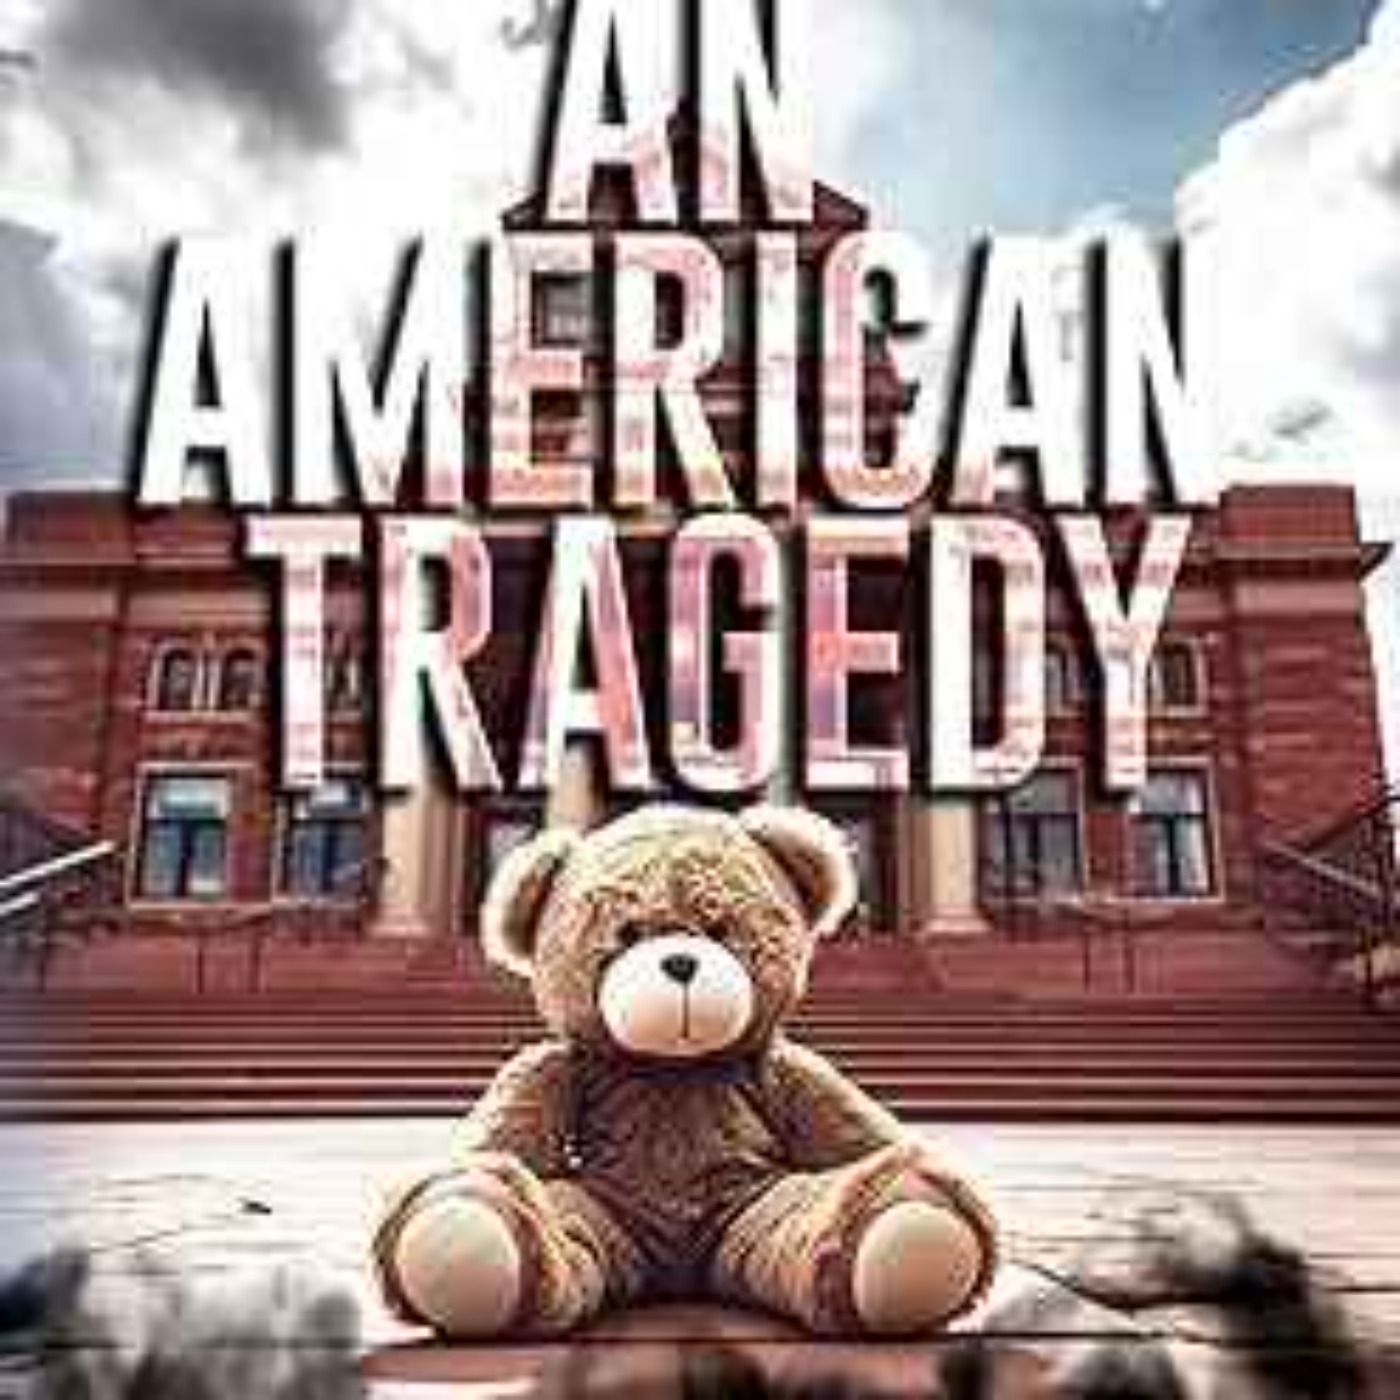 Dan Flanigan An American Tragedy